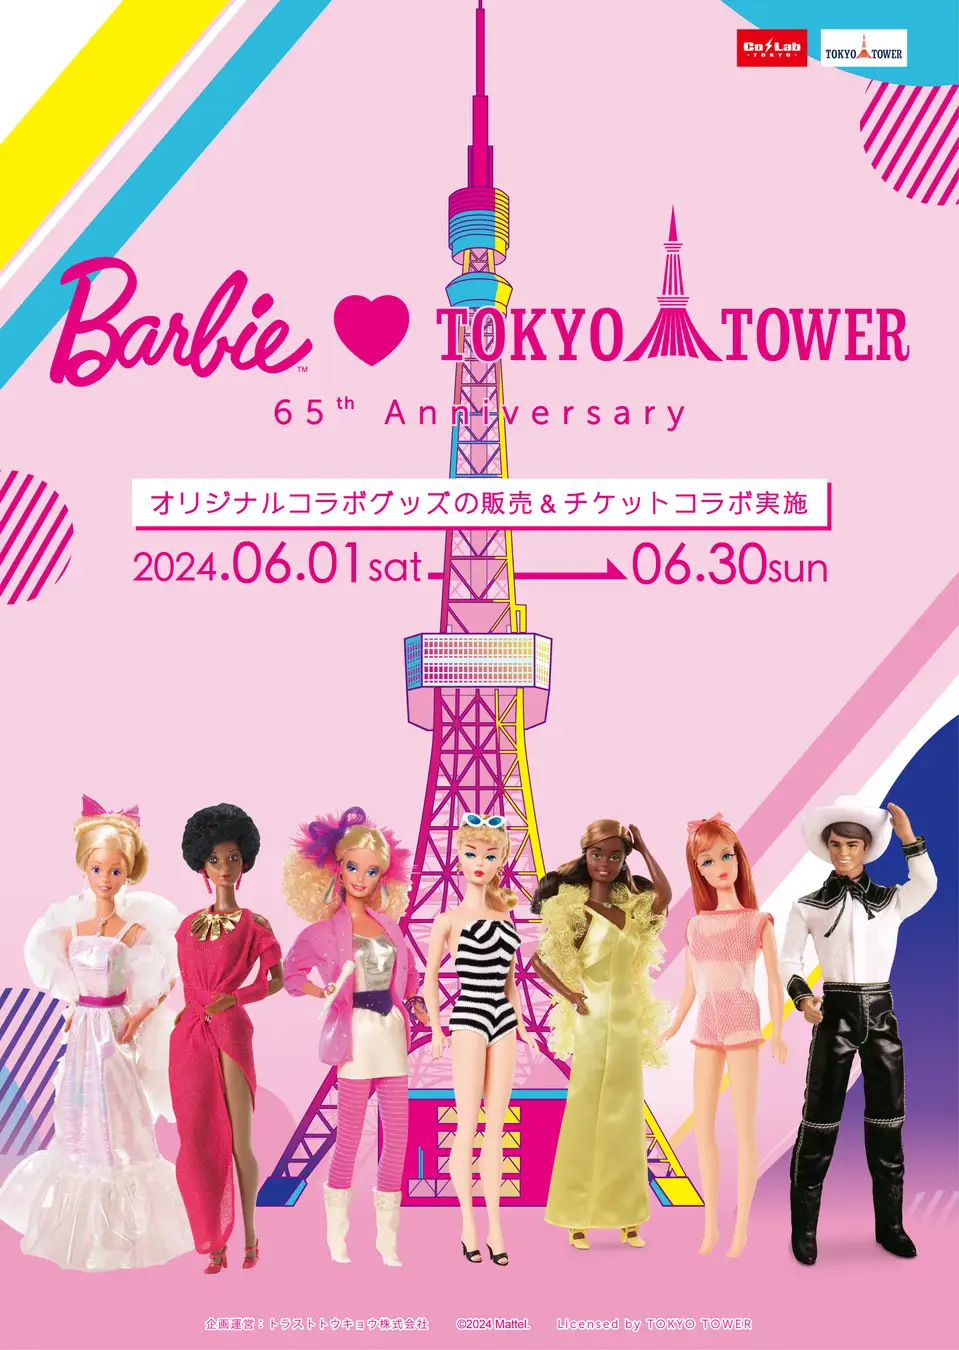 「バービー」と「東京タワー」の65周年を記念して限定コラボイベント開催決定！！